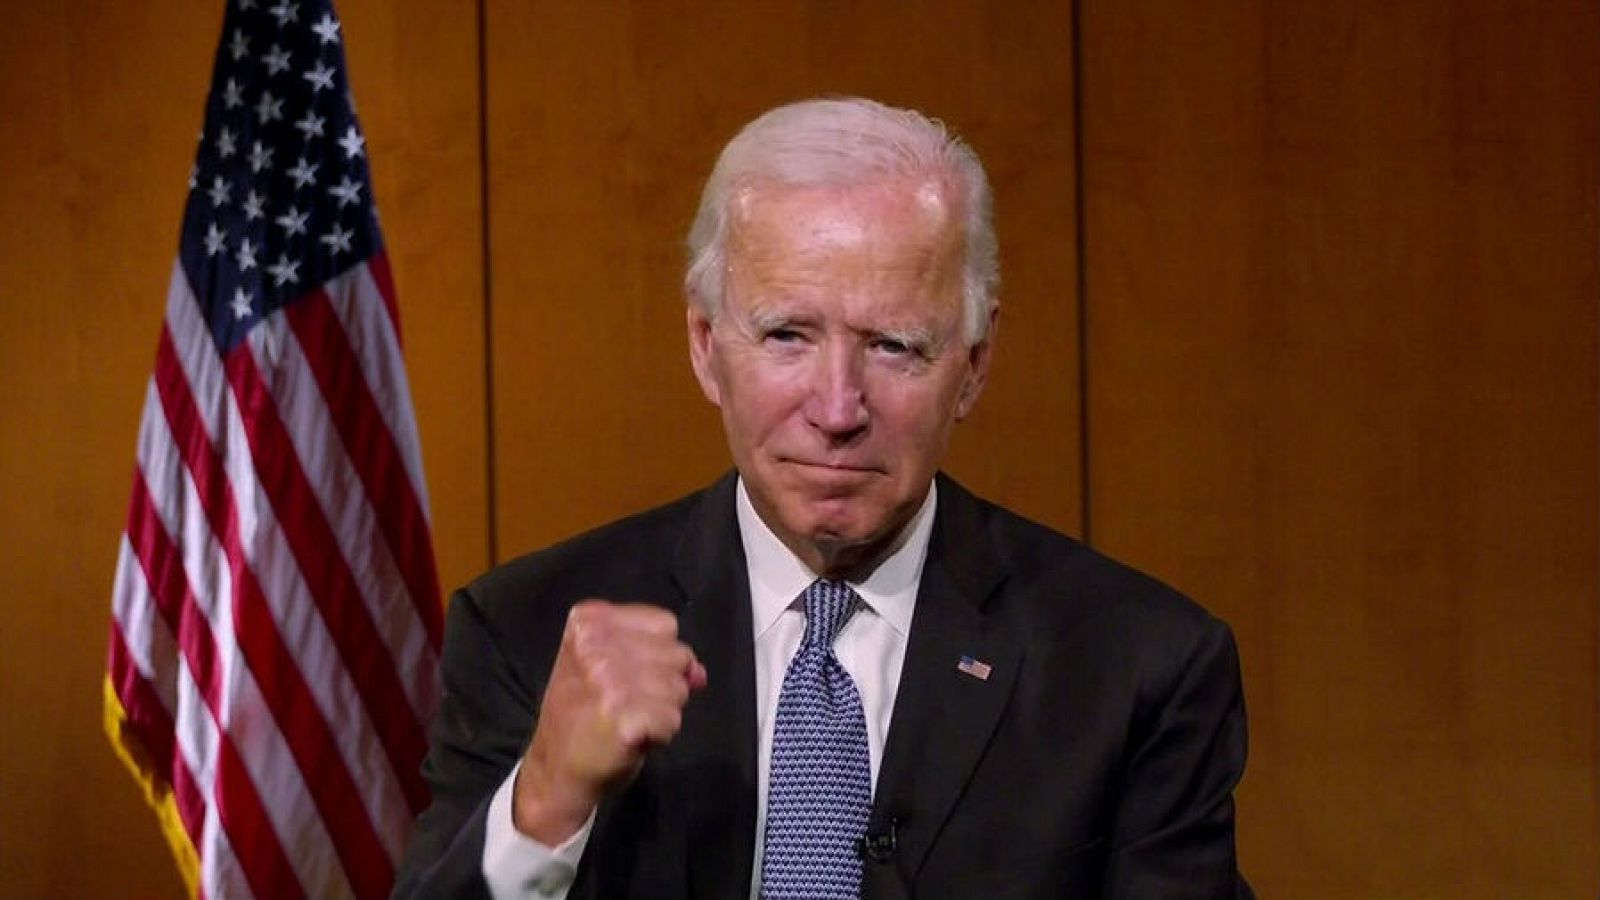 El candidato presidencial demócrata de los Estados Unidos y exvicepresidente, Joe Biden, aprieta el puño en reacción a un comentario sobre políticos que luchan por la justicia racial durante la Convención Nacional Demócrata virtual de 2020.